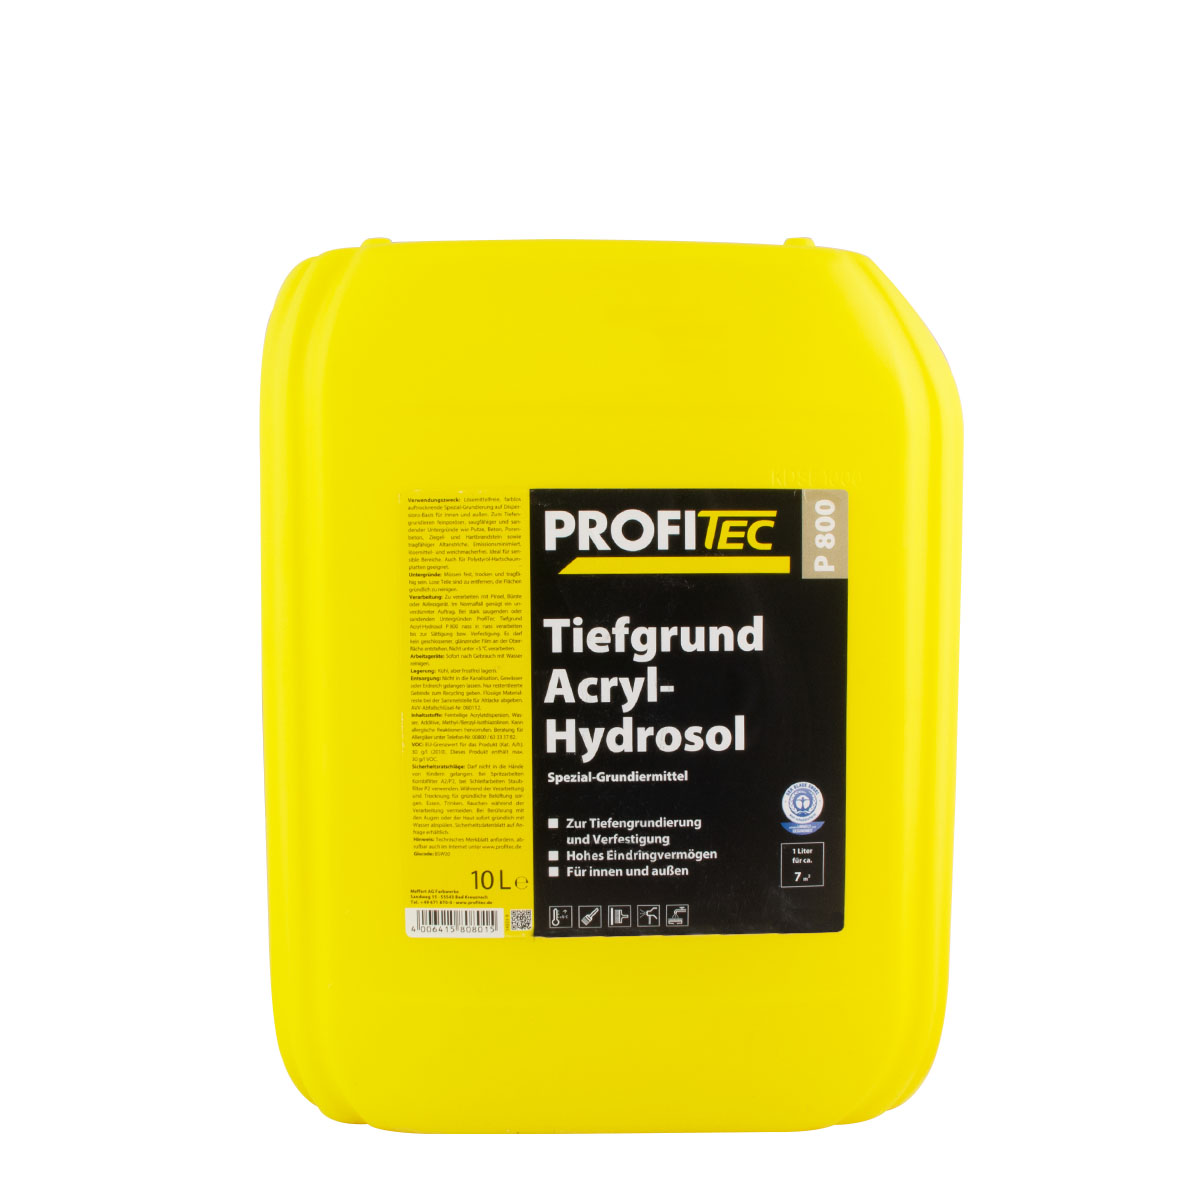 Profitec P800 Tiefgrund Acryl-Hydrosol 10L, Tiefengrund